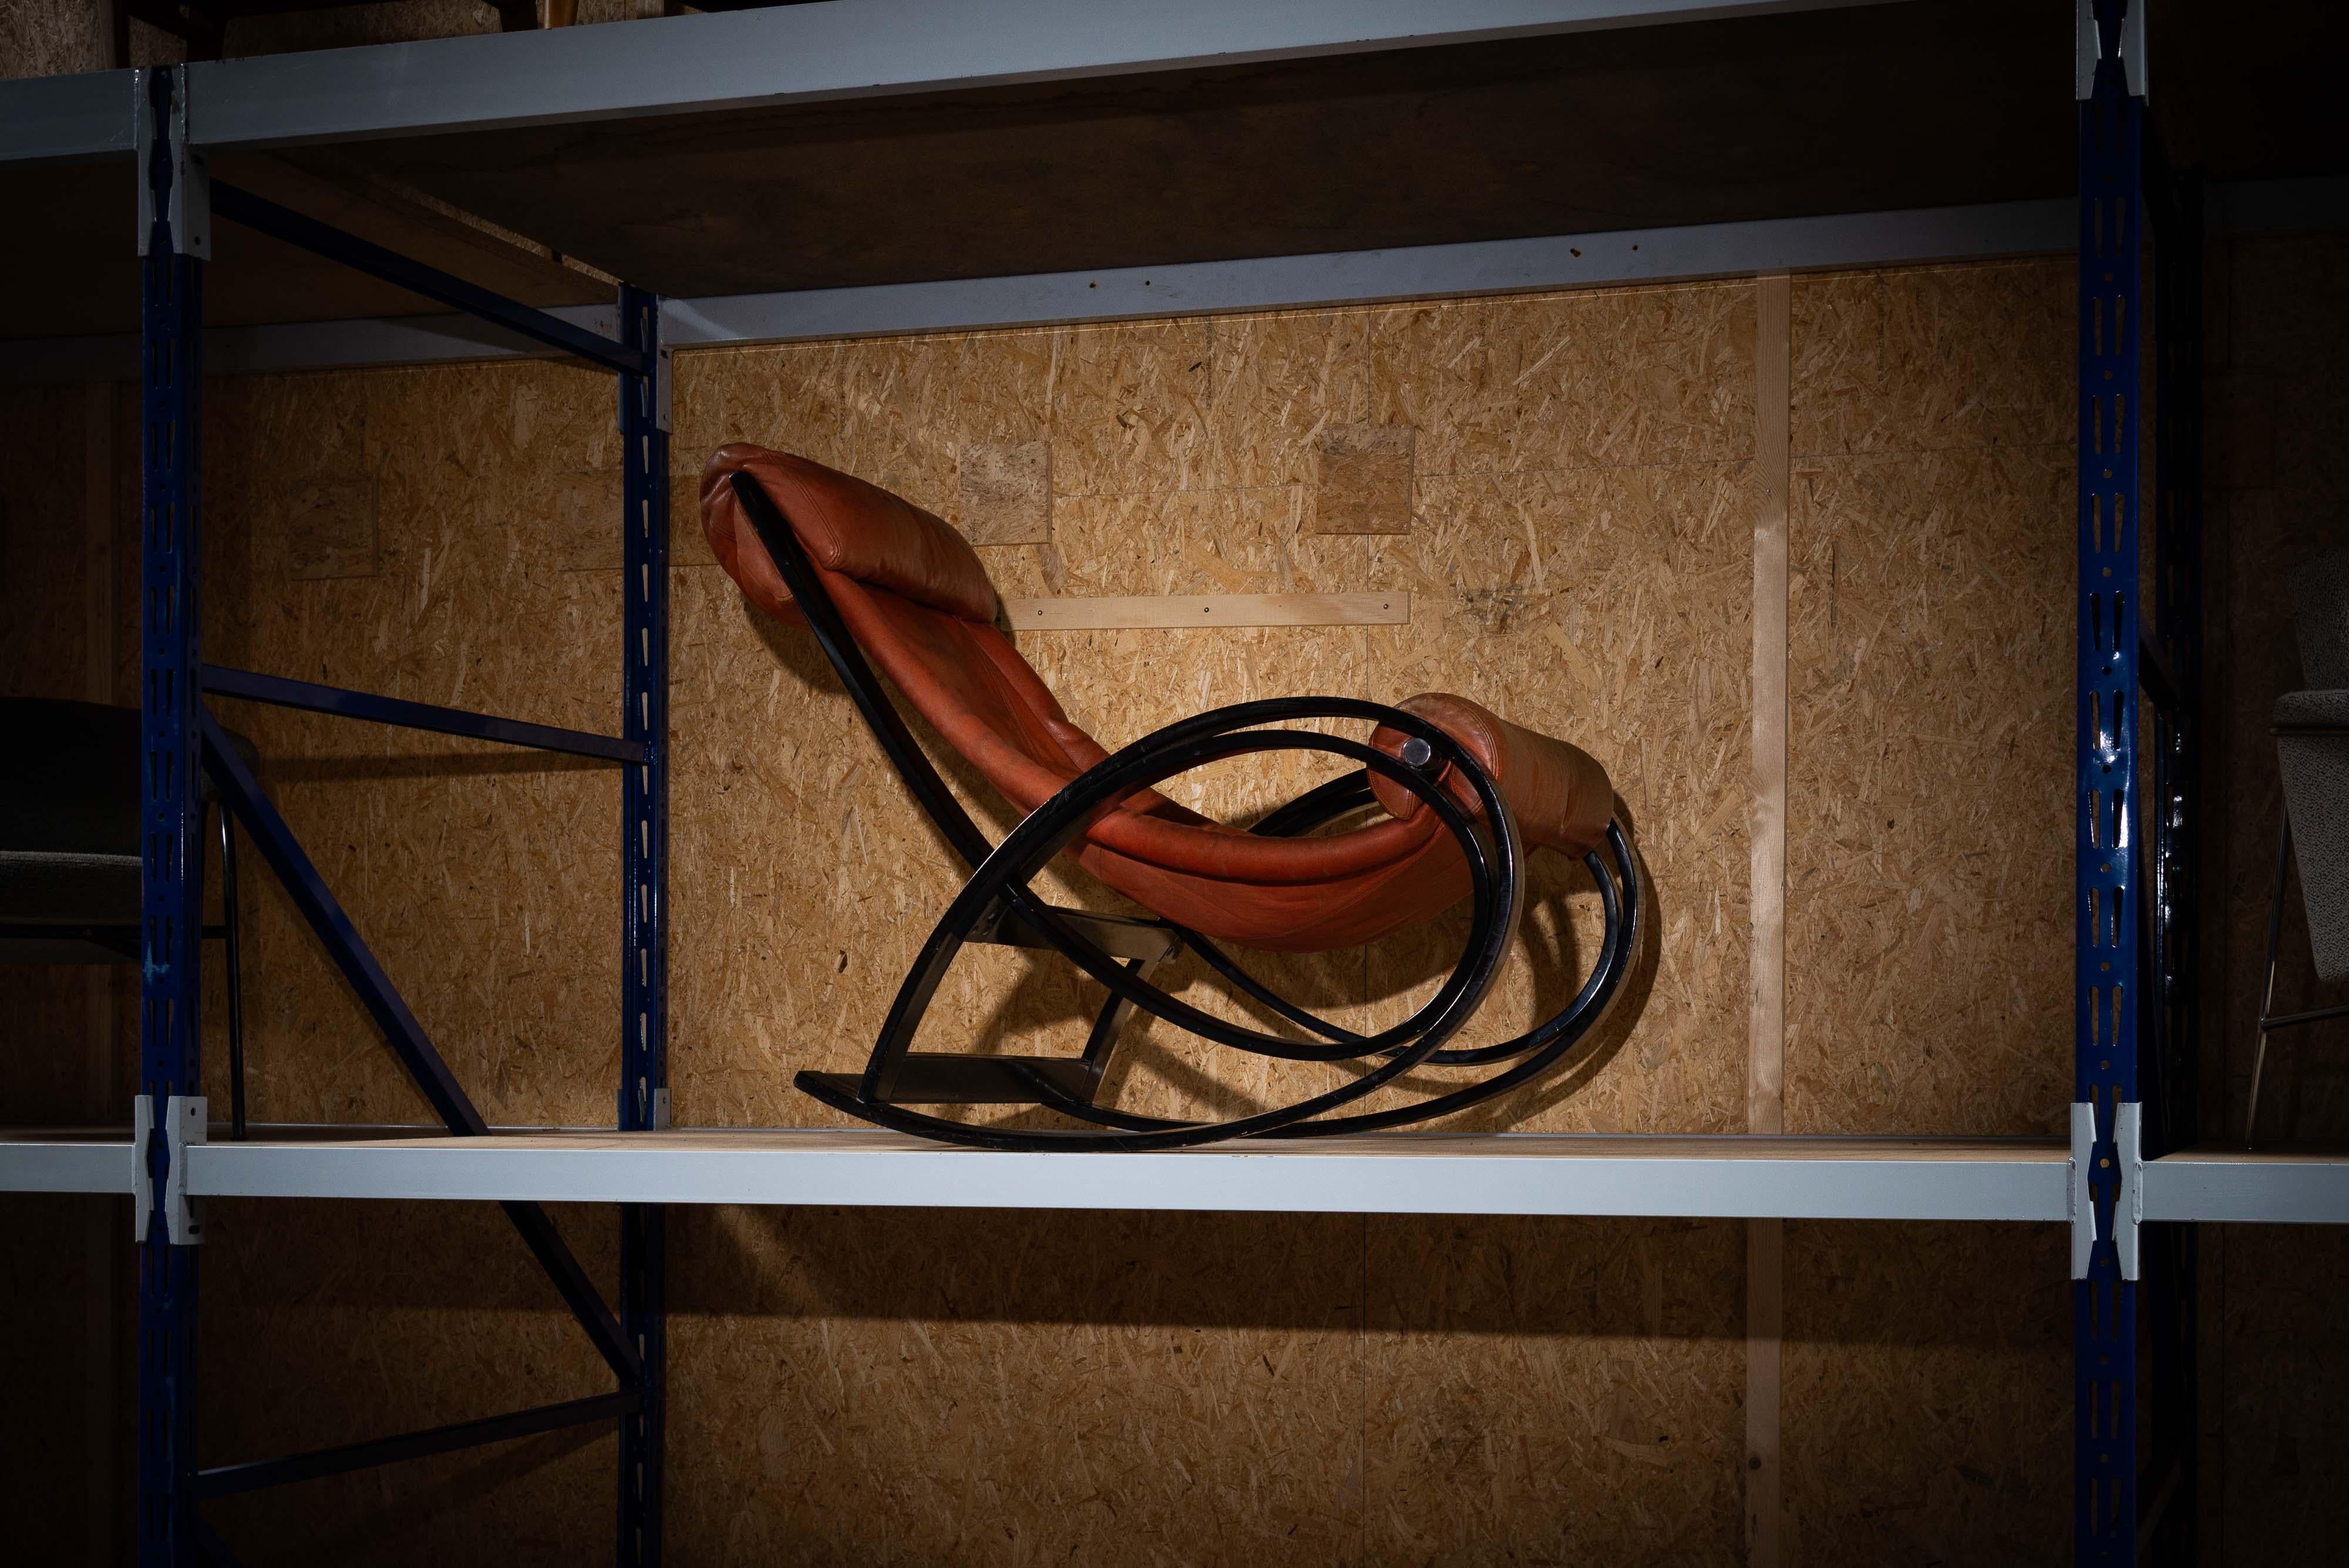 Der ikonische Schaukelstuhl Sgarsul wurde 1962 von Gae Aulenti entworfen und von Poltronova in Italien hergestellt. Es ist aus Birkensperrholz gefertigt und hat eine glatte schwarze Glanzoberfläche, die ihm ein modernes und elegantes Aussehen